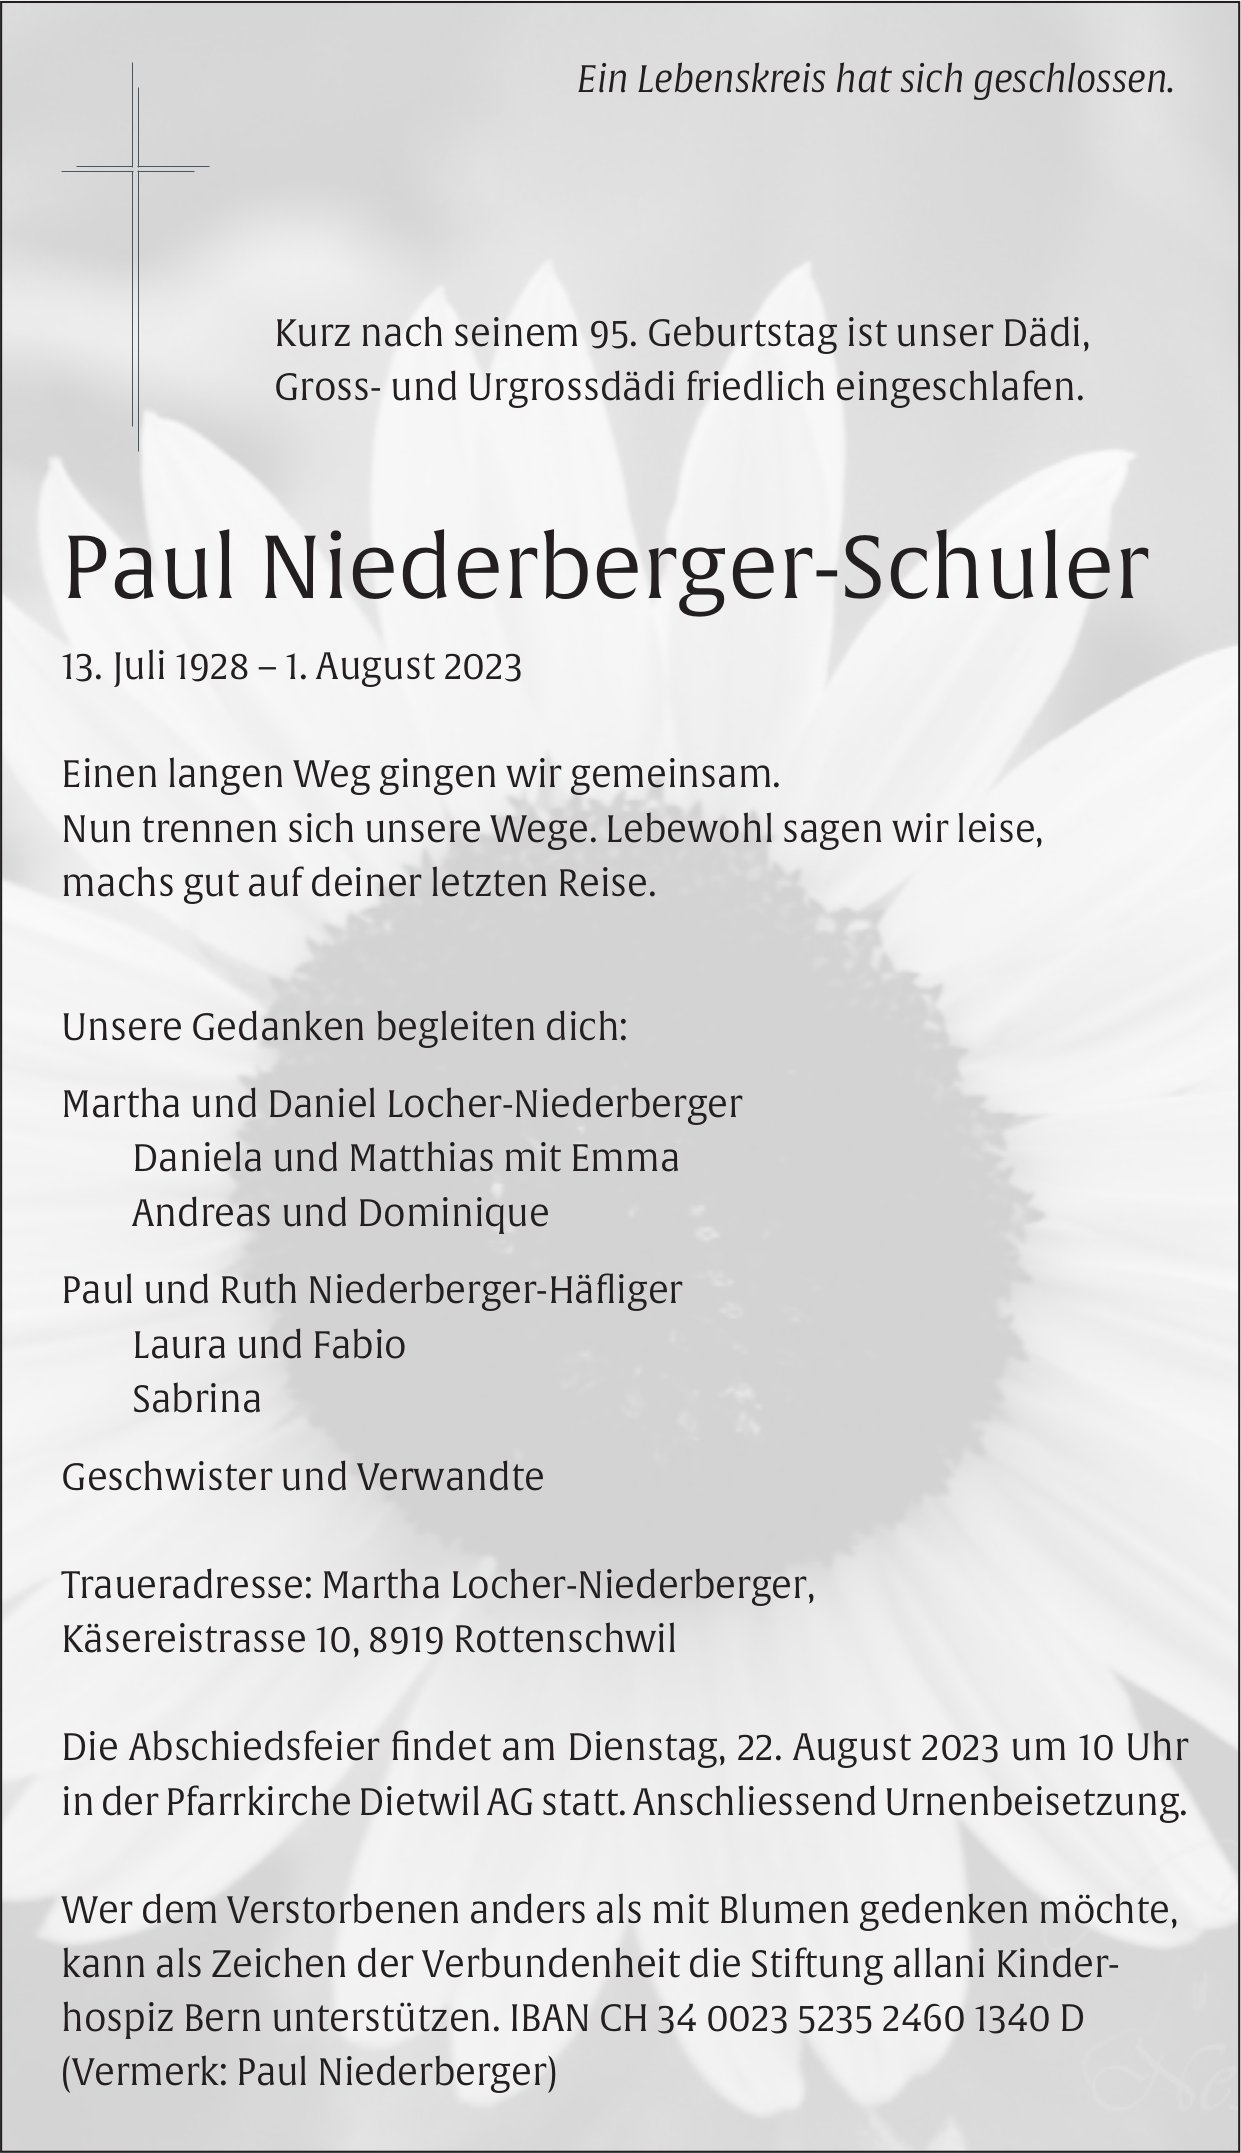 Niederberger-Schuler Paul, August 2023 / TA